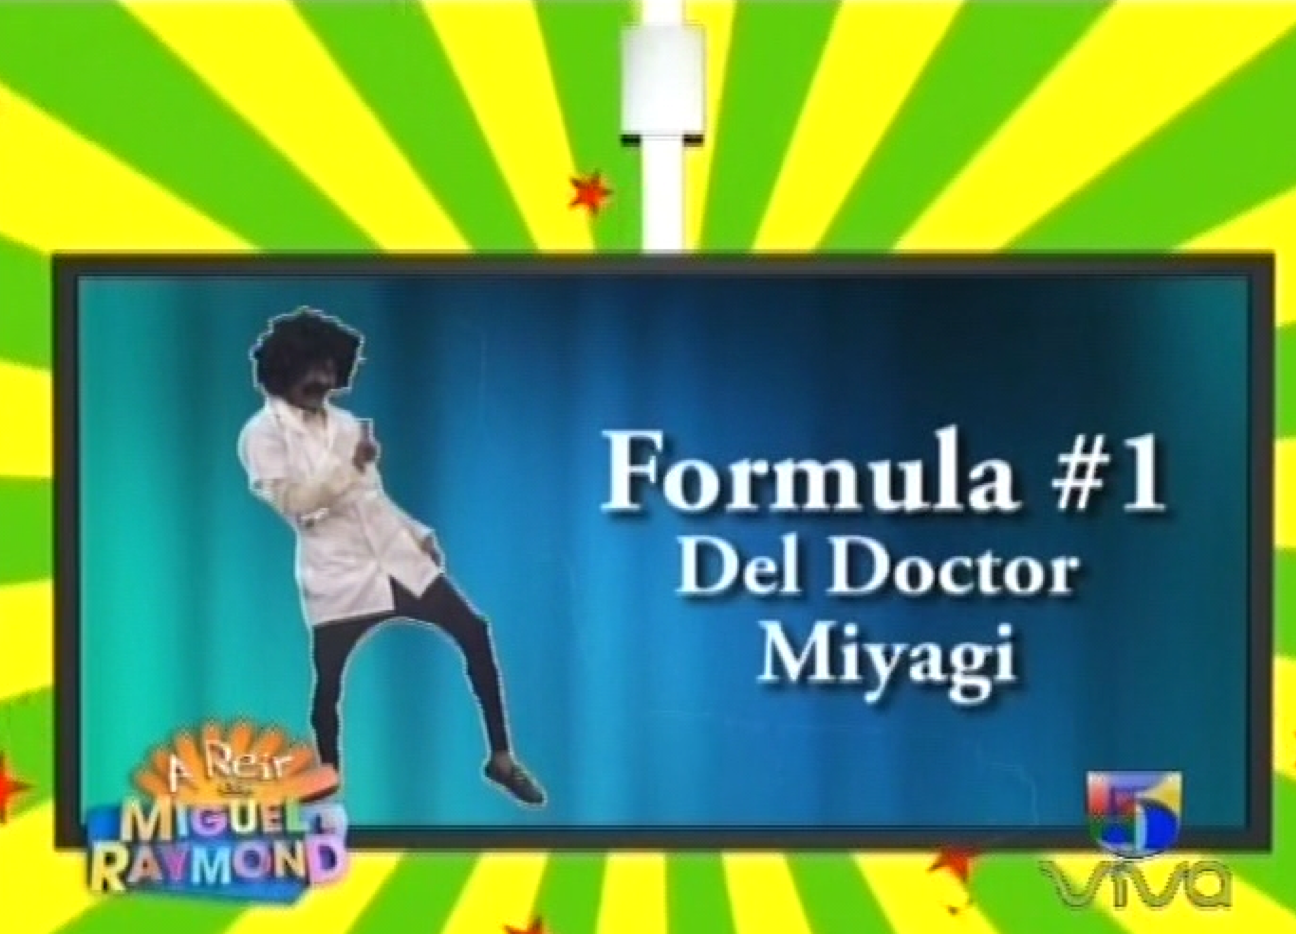 A Reír Con Miguel Y Raymond Presenta: El Doctor Miyagi